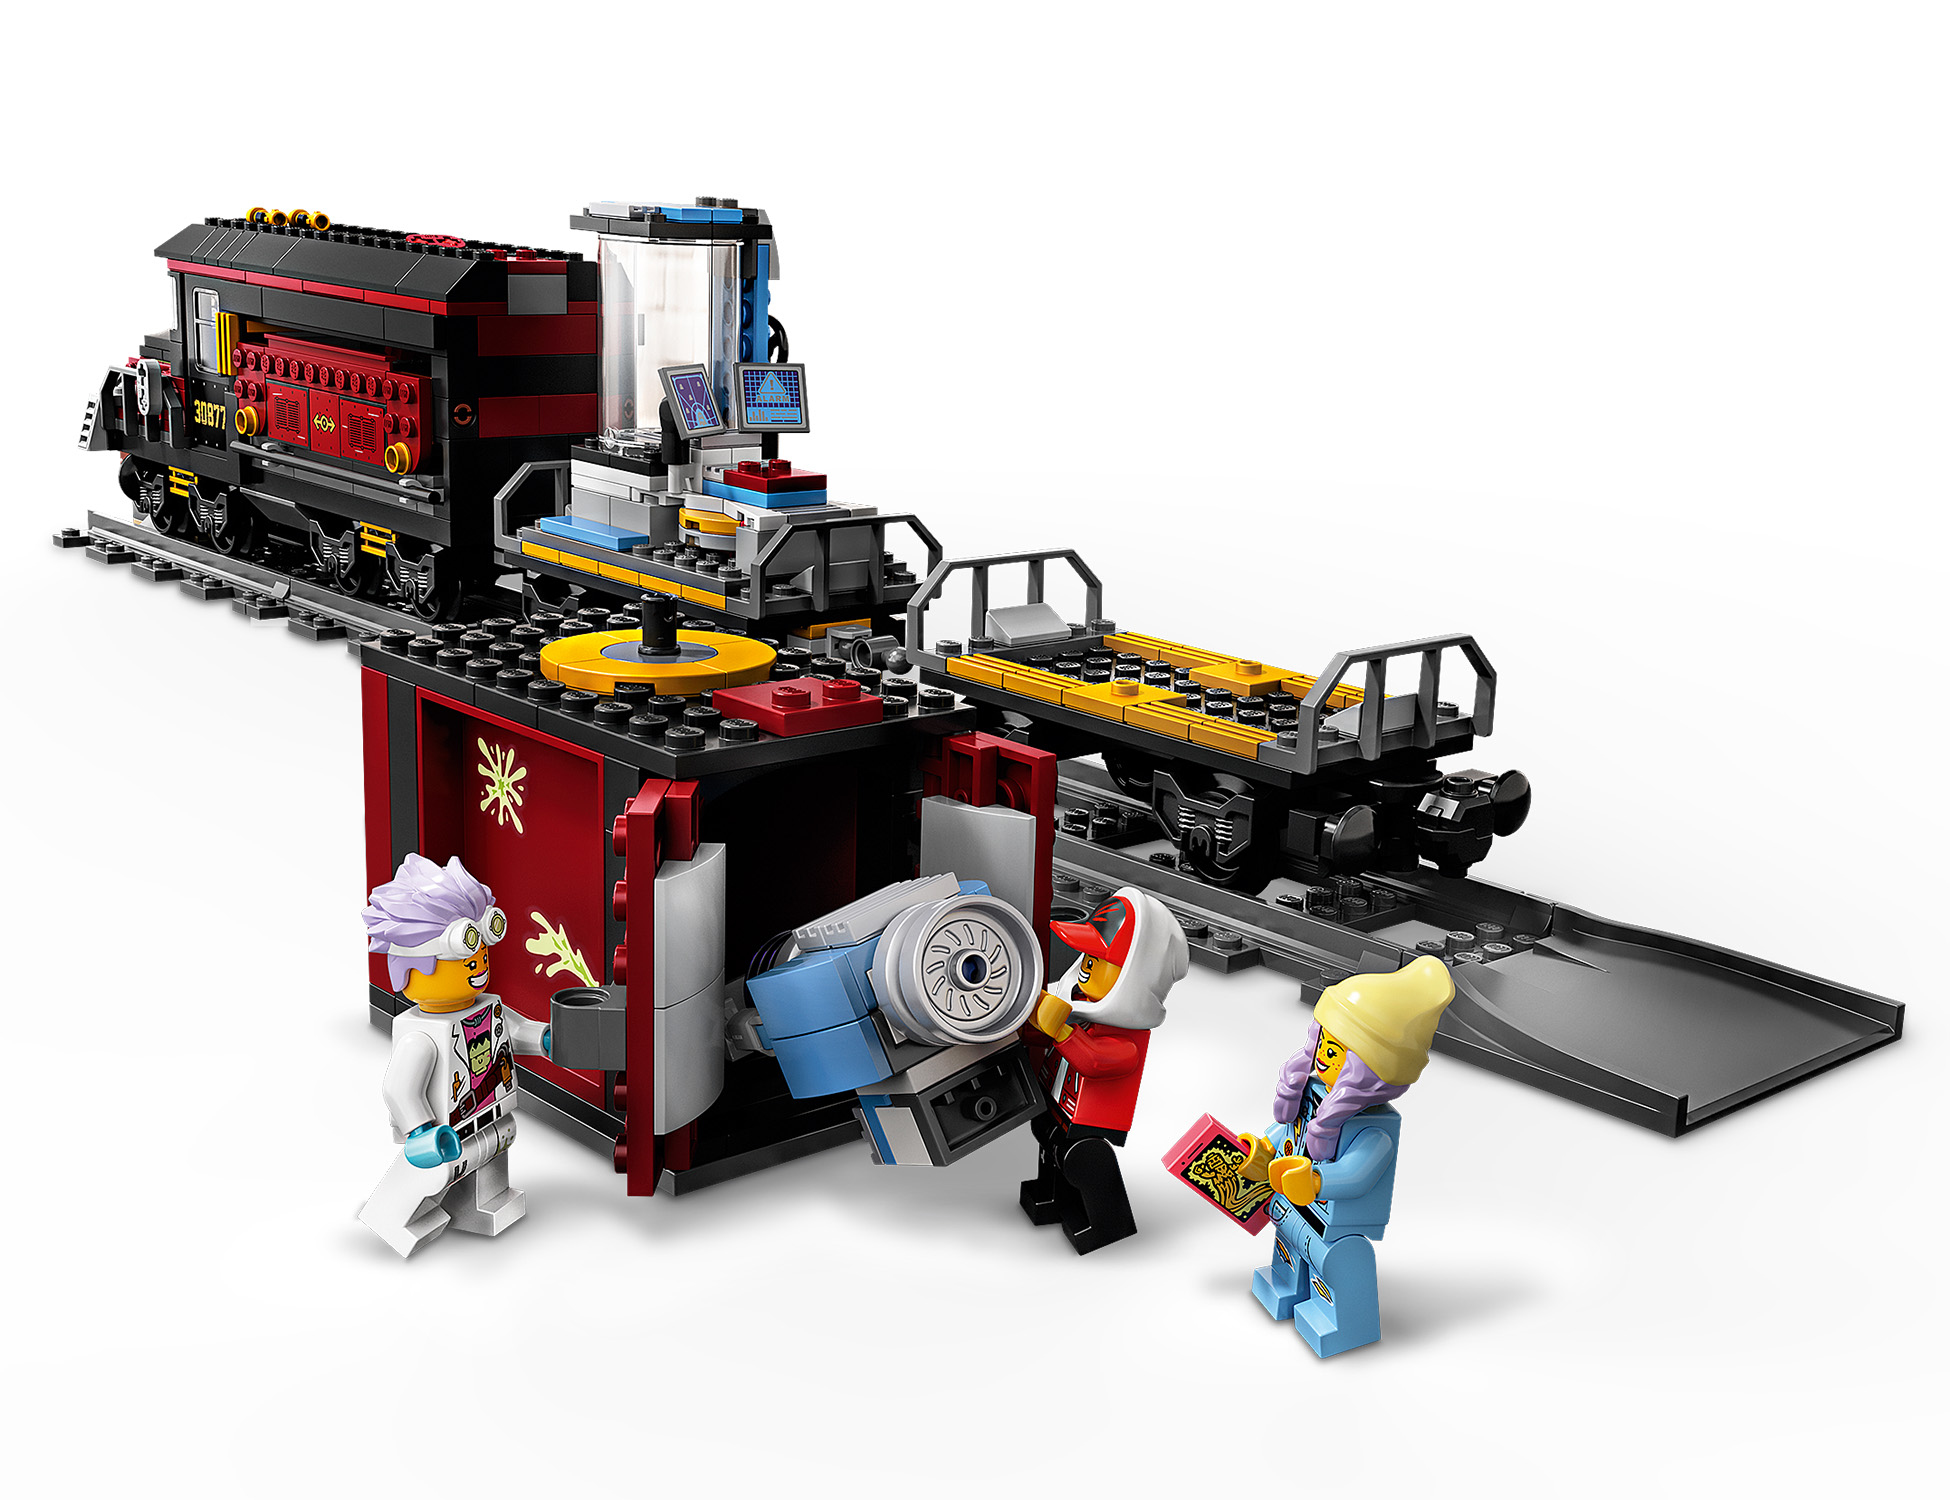 LEGO Hidden Side Geister-Expresszug - 70424